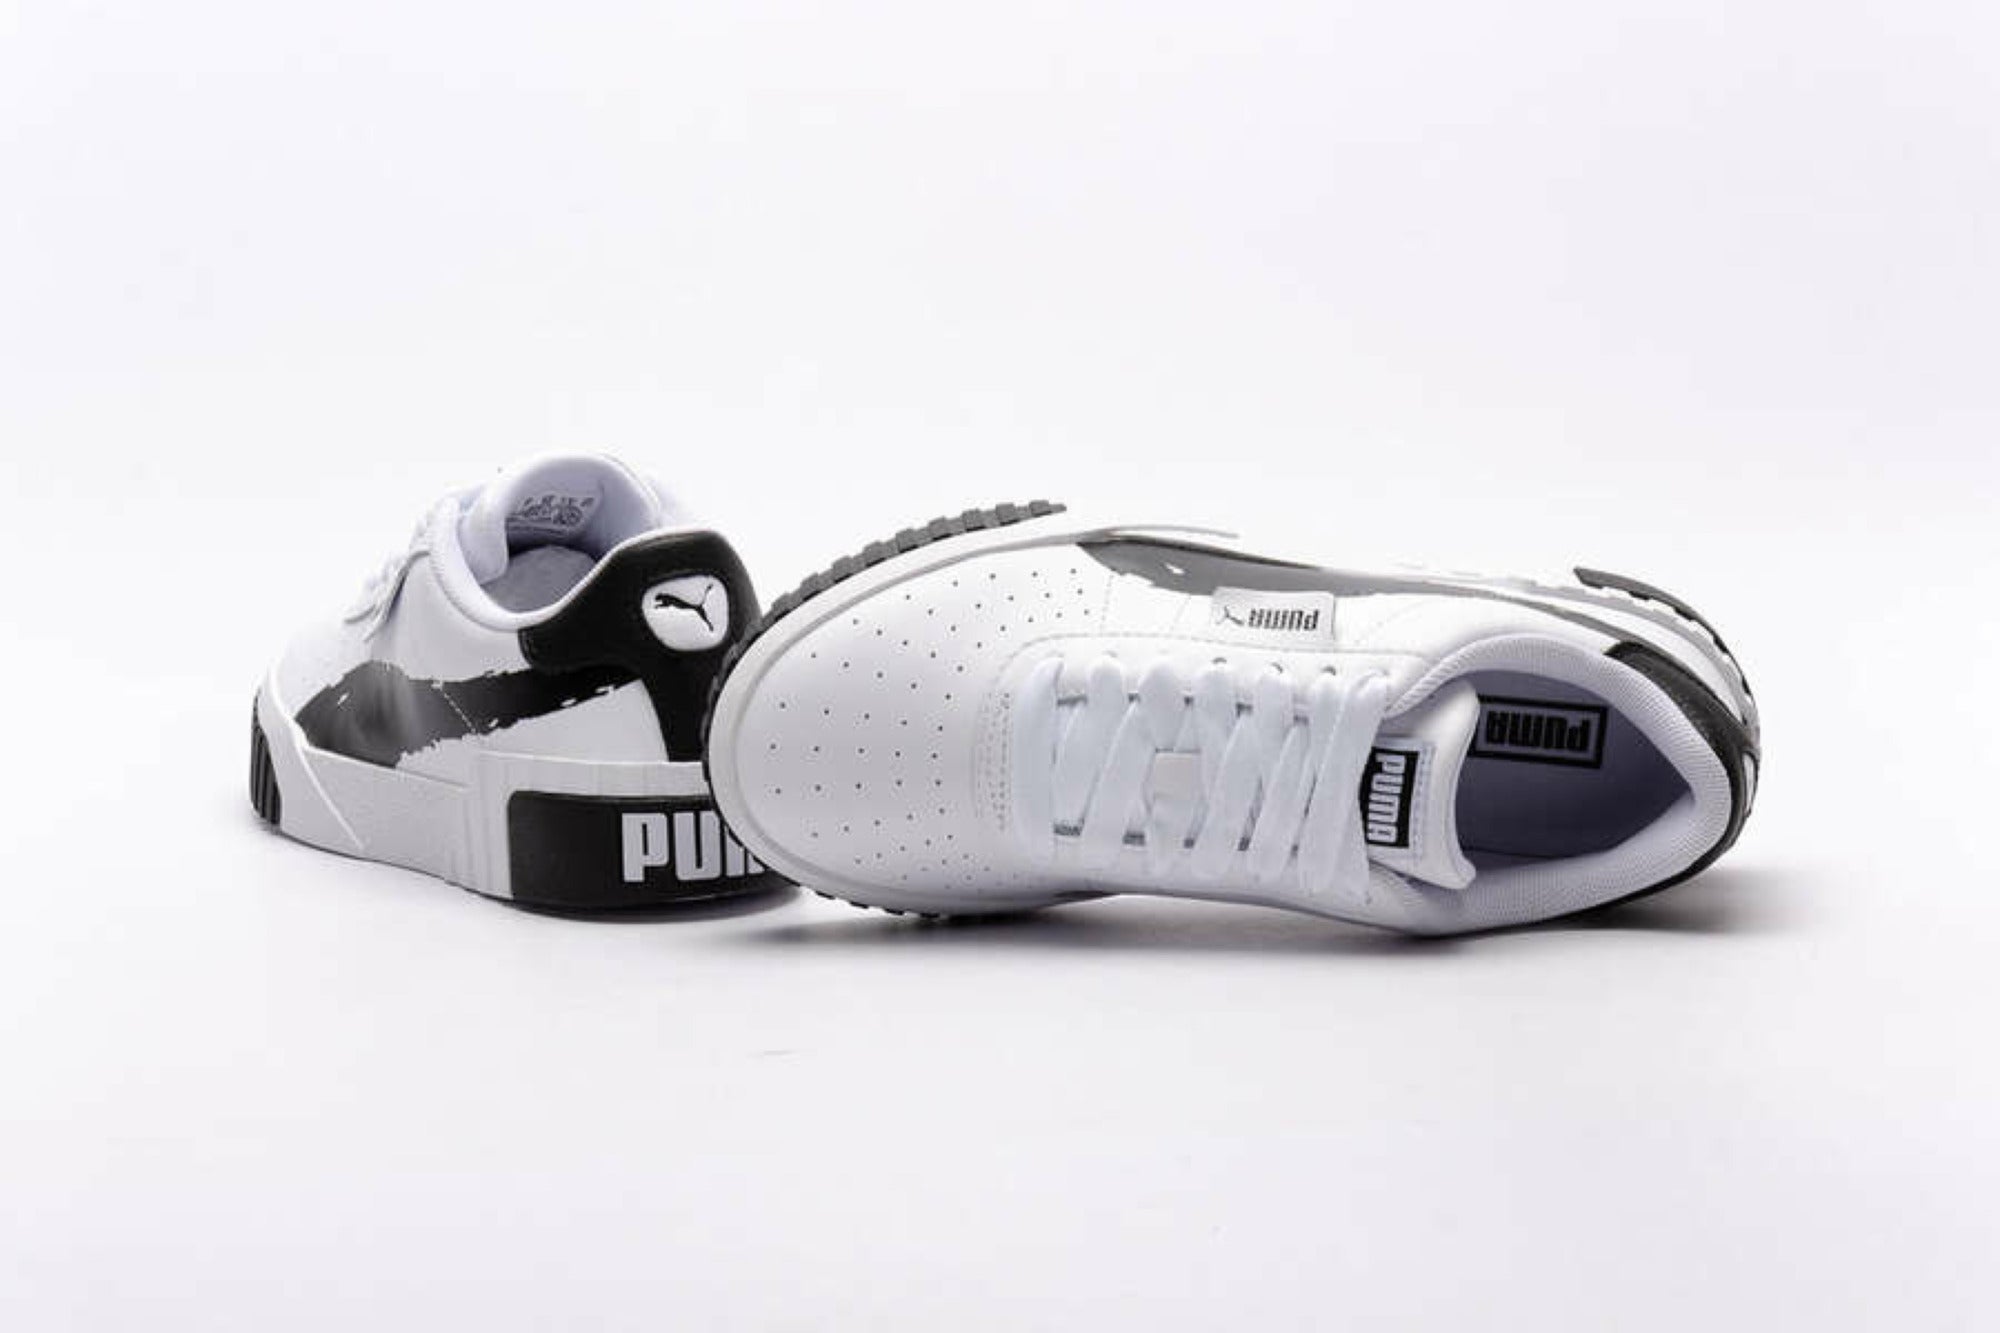 Puma scarpa sneakers da donna Cali Brushed 373896 01 bianco nero